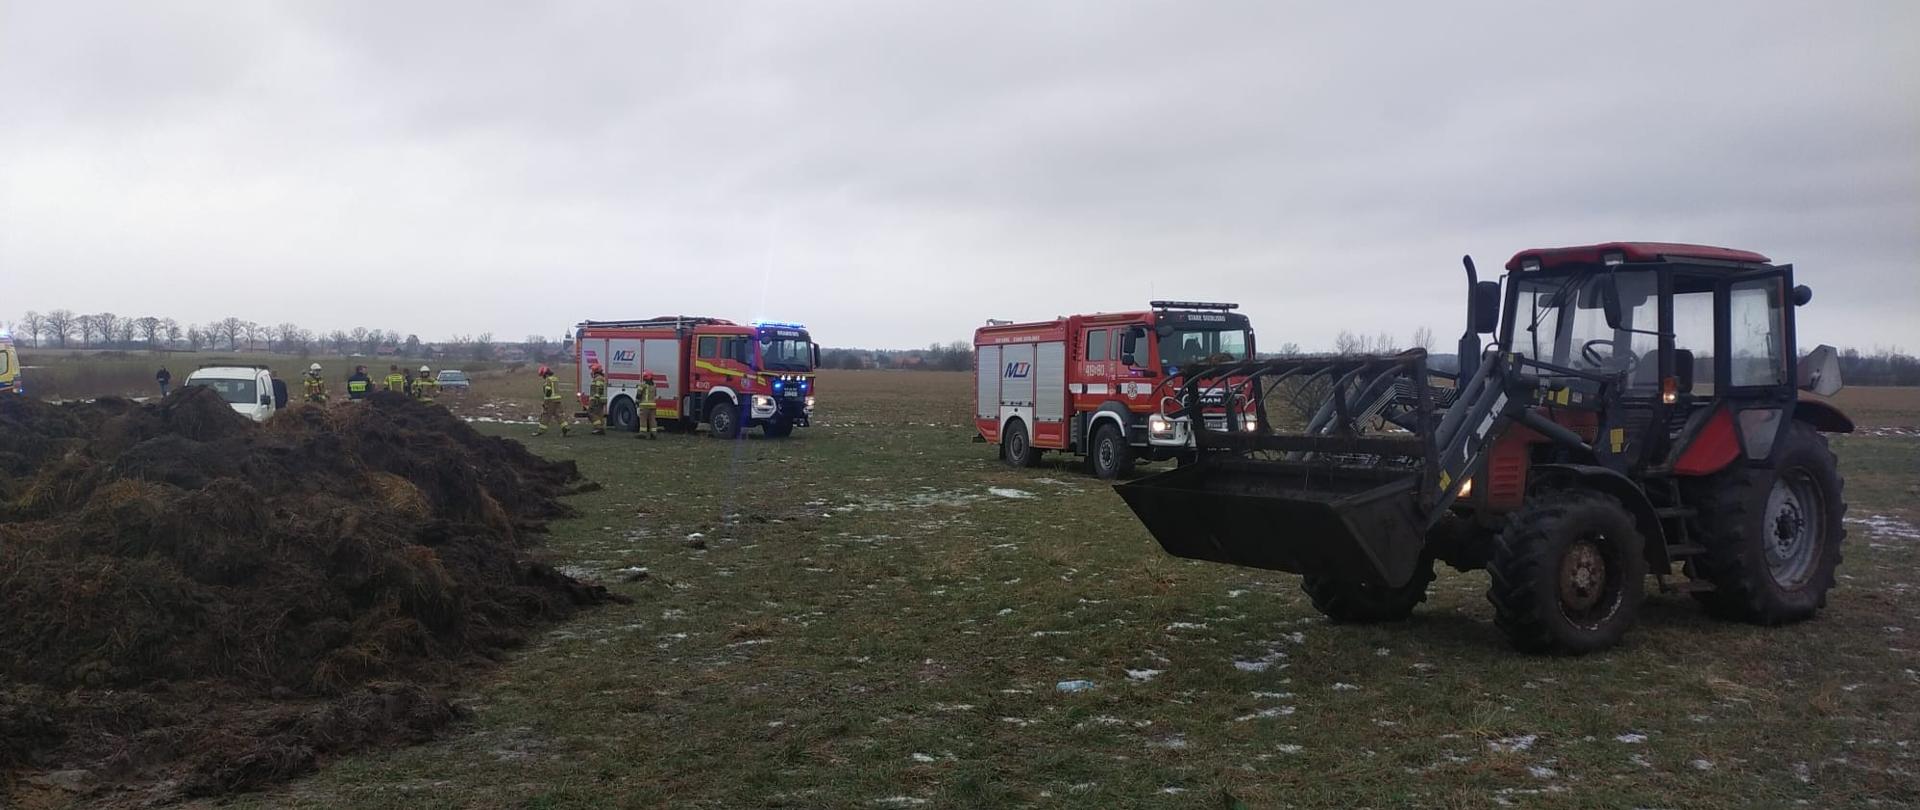 Na polu stoją dwa duże samochody strażackie, z prawej strony ciągnik rolniczy. Pochmurnie.